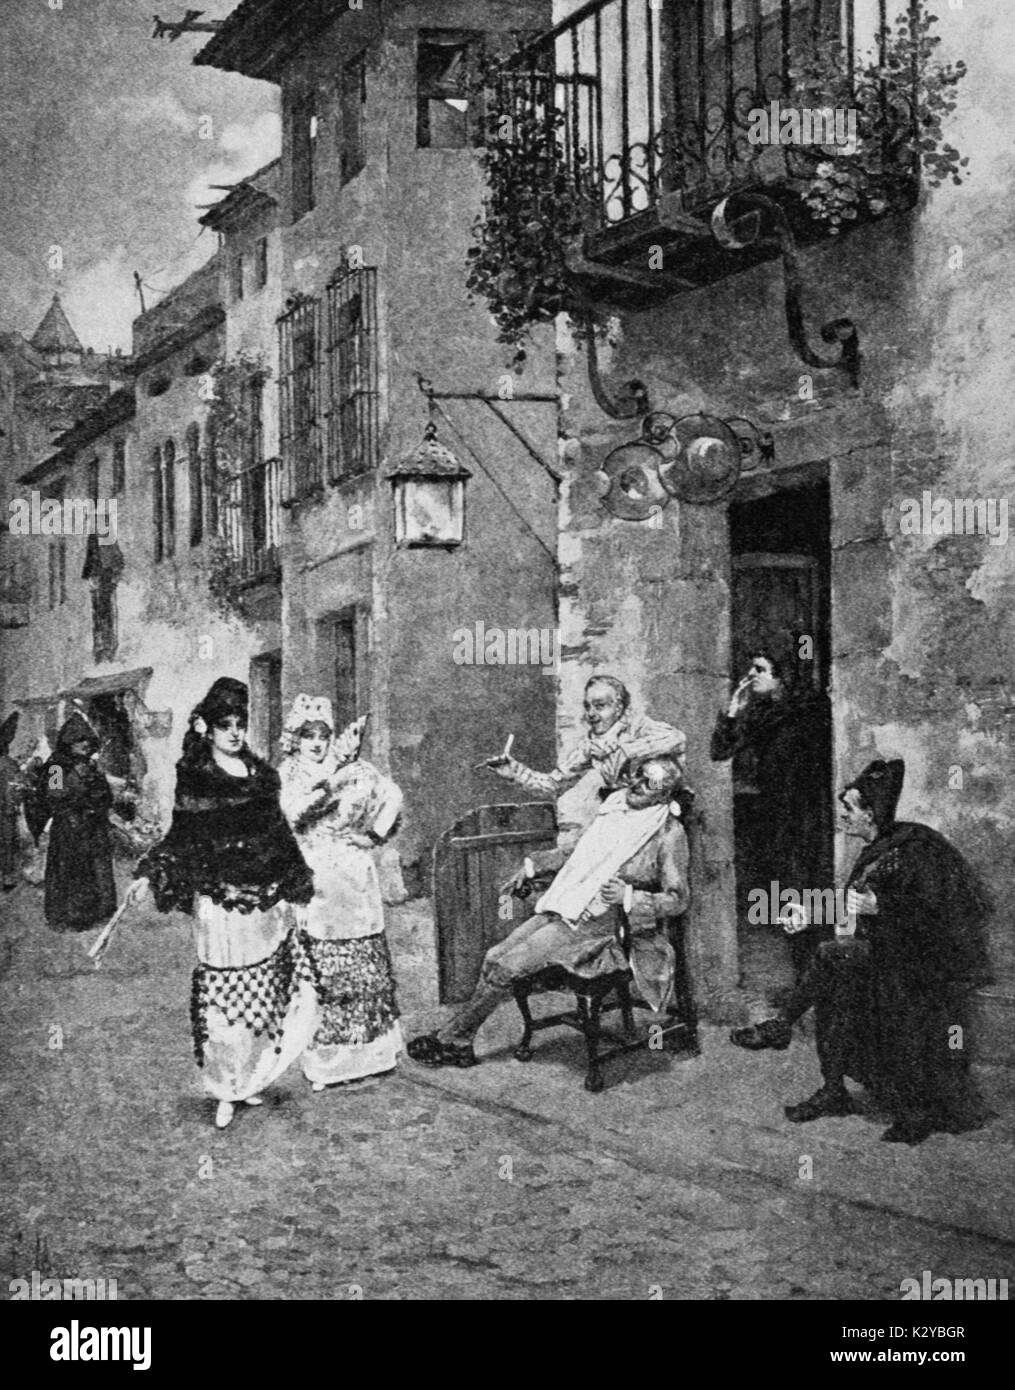 Gioacchino Rossini, opéra 'Barbier de Séville', scène de rue. Après la peinture de F. Maso. Compositeur italien, 29 février 1792 - 13 novembre 1868. Banque D'Images